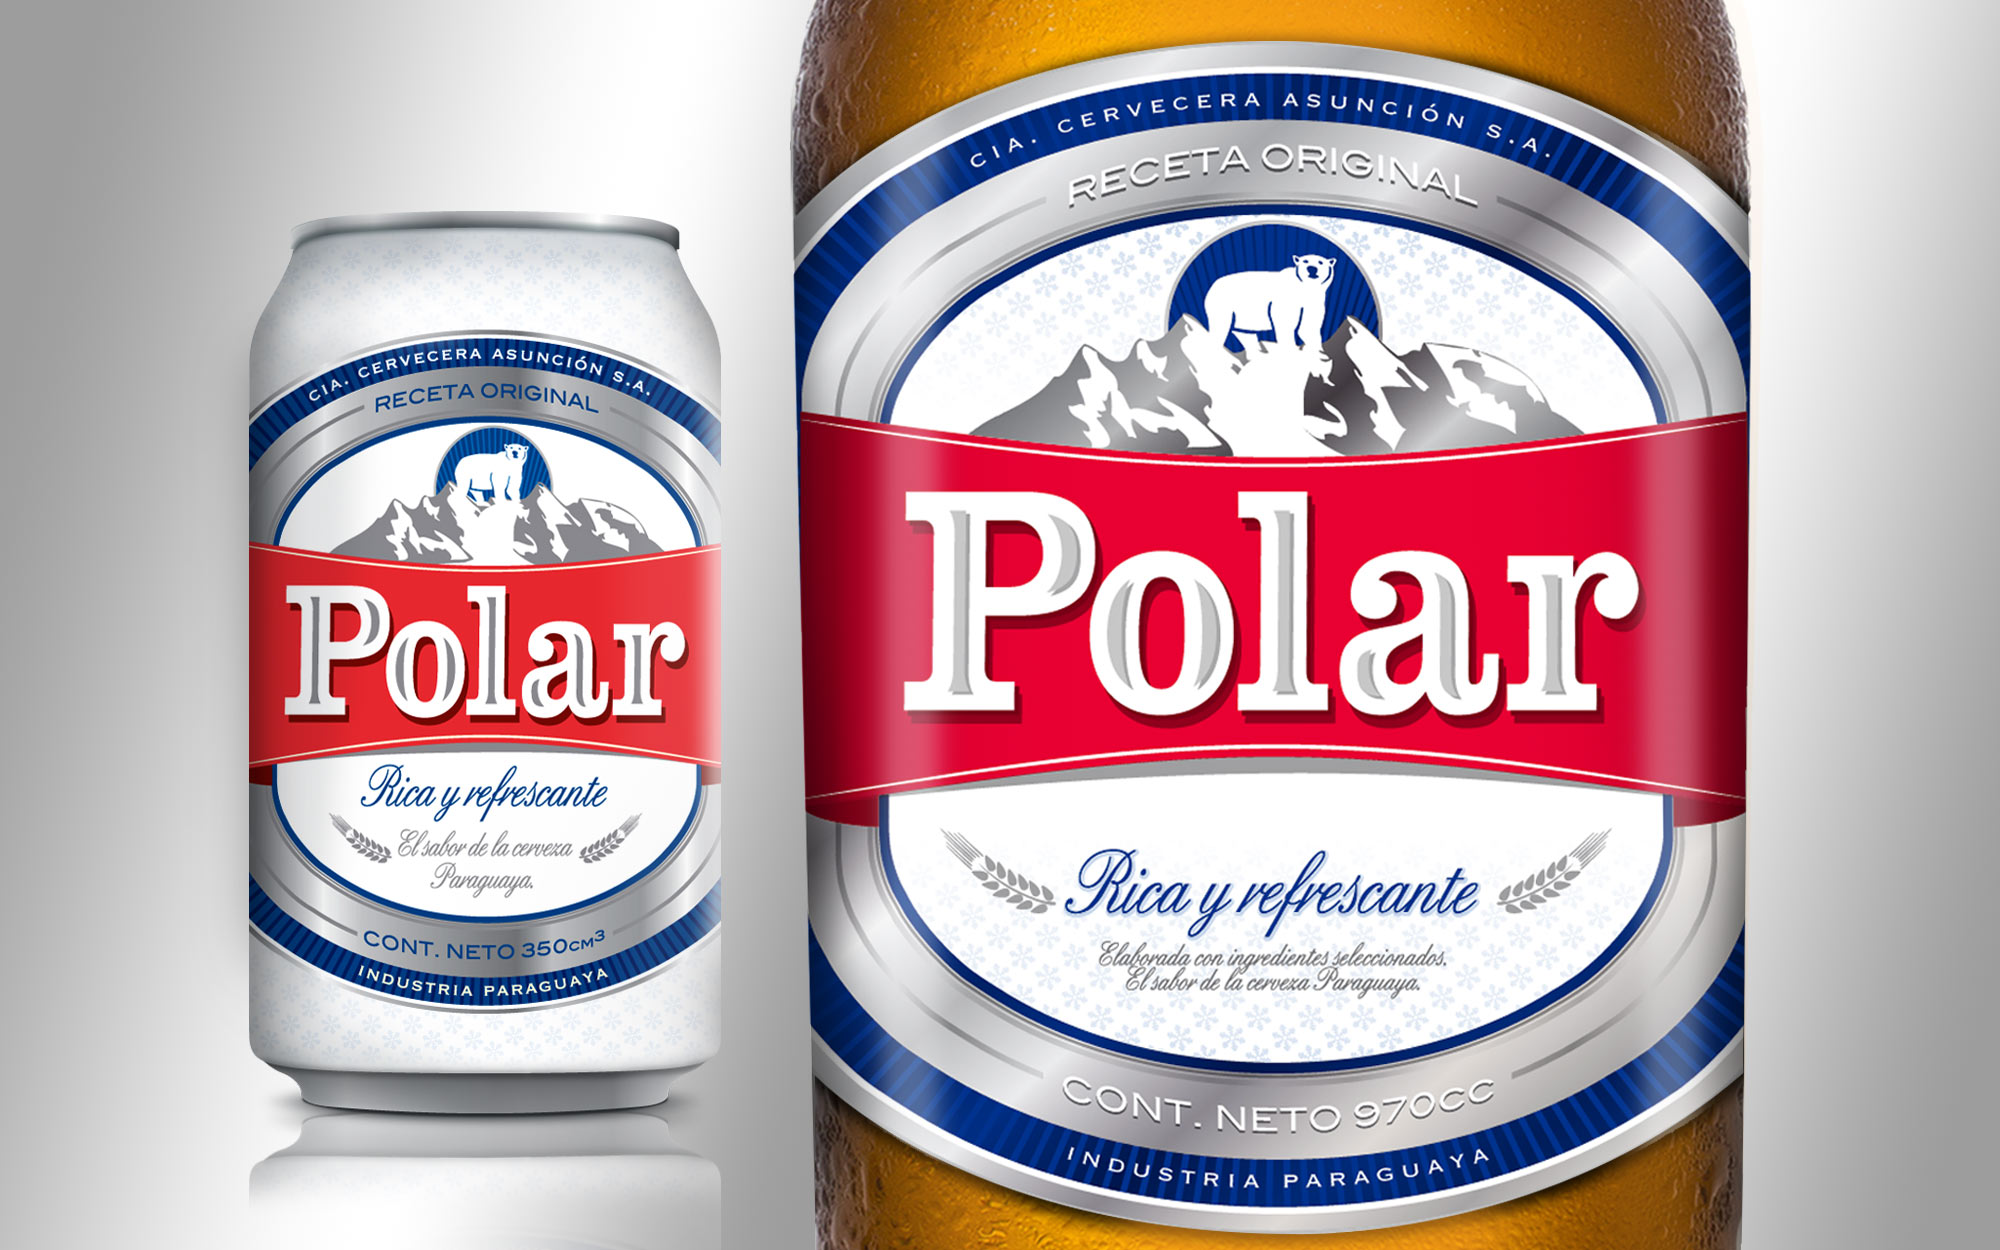  Polar, la mayor cervecera de Venezuela detiene su producción